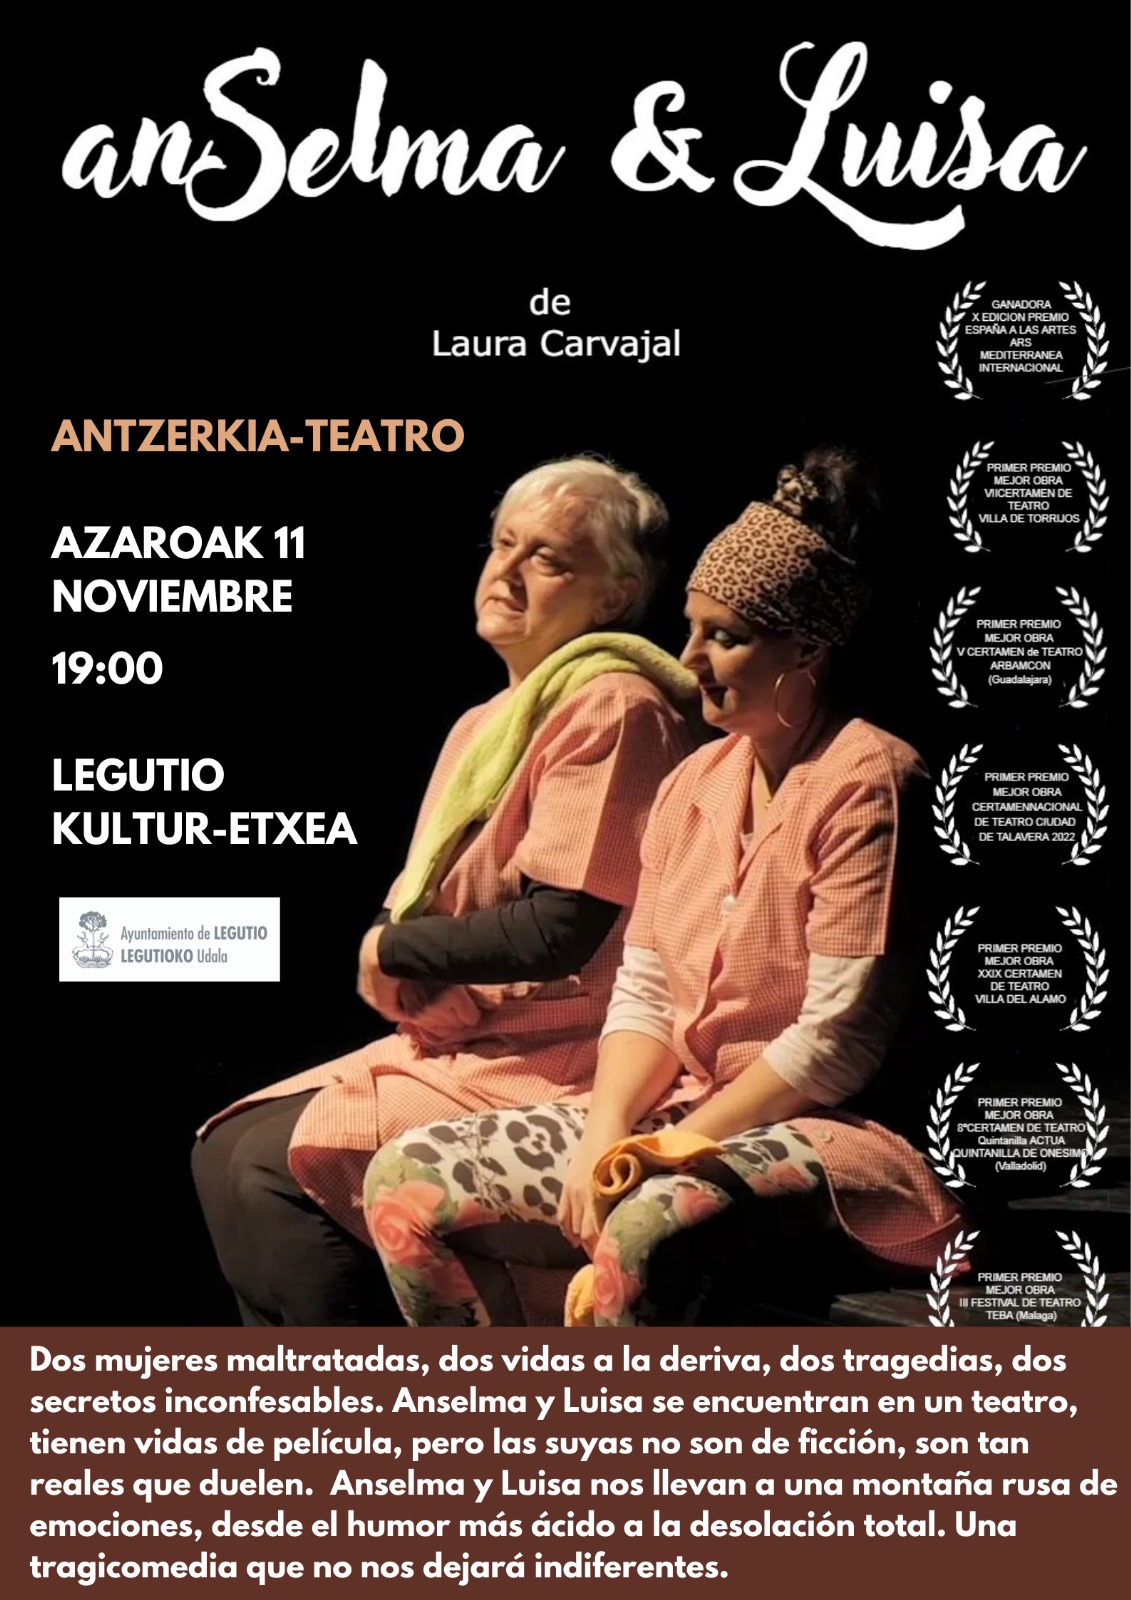 Teatro Anselma & Luisa